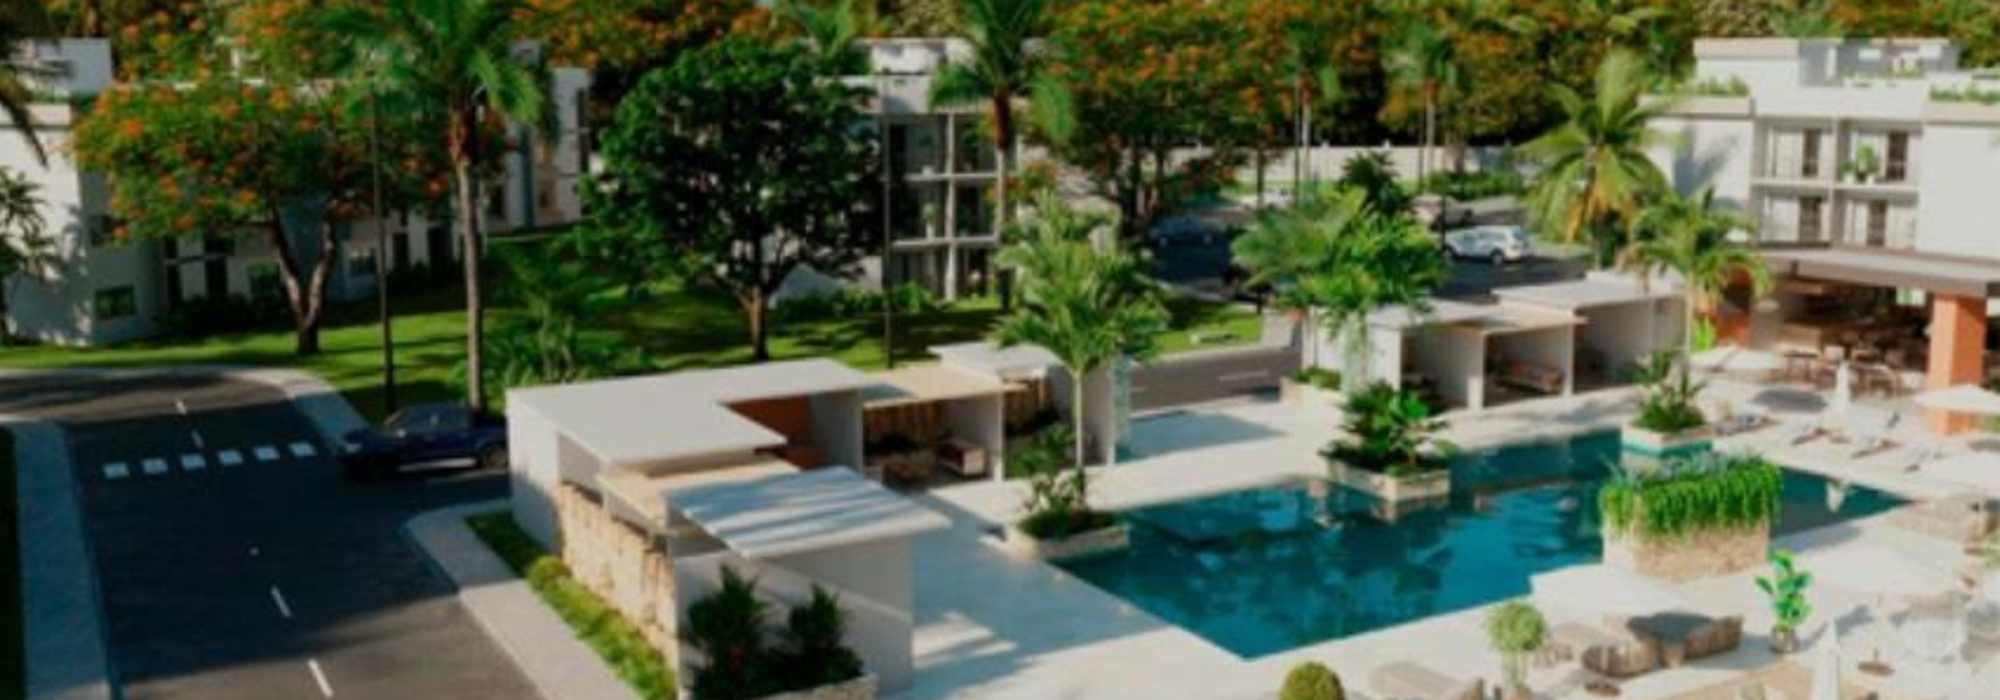 Vendo Apartamento en Punta Cana precios de Pre Venta